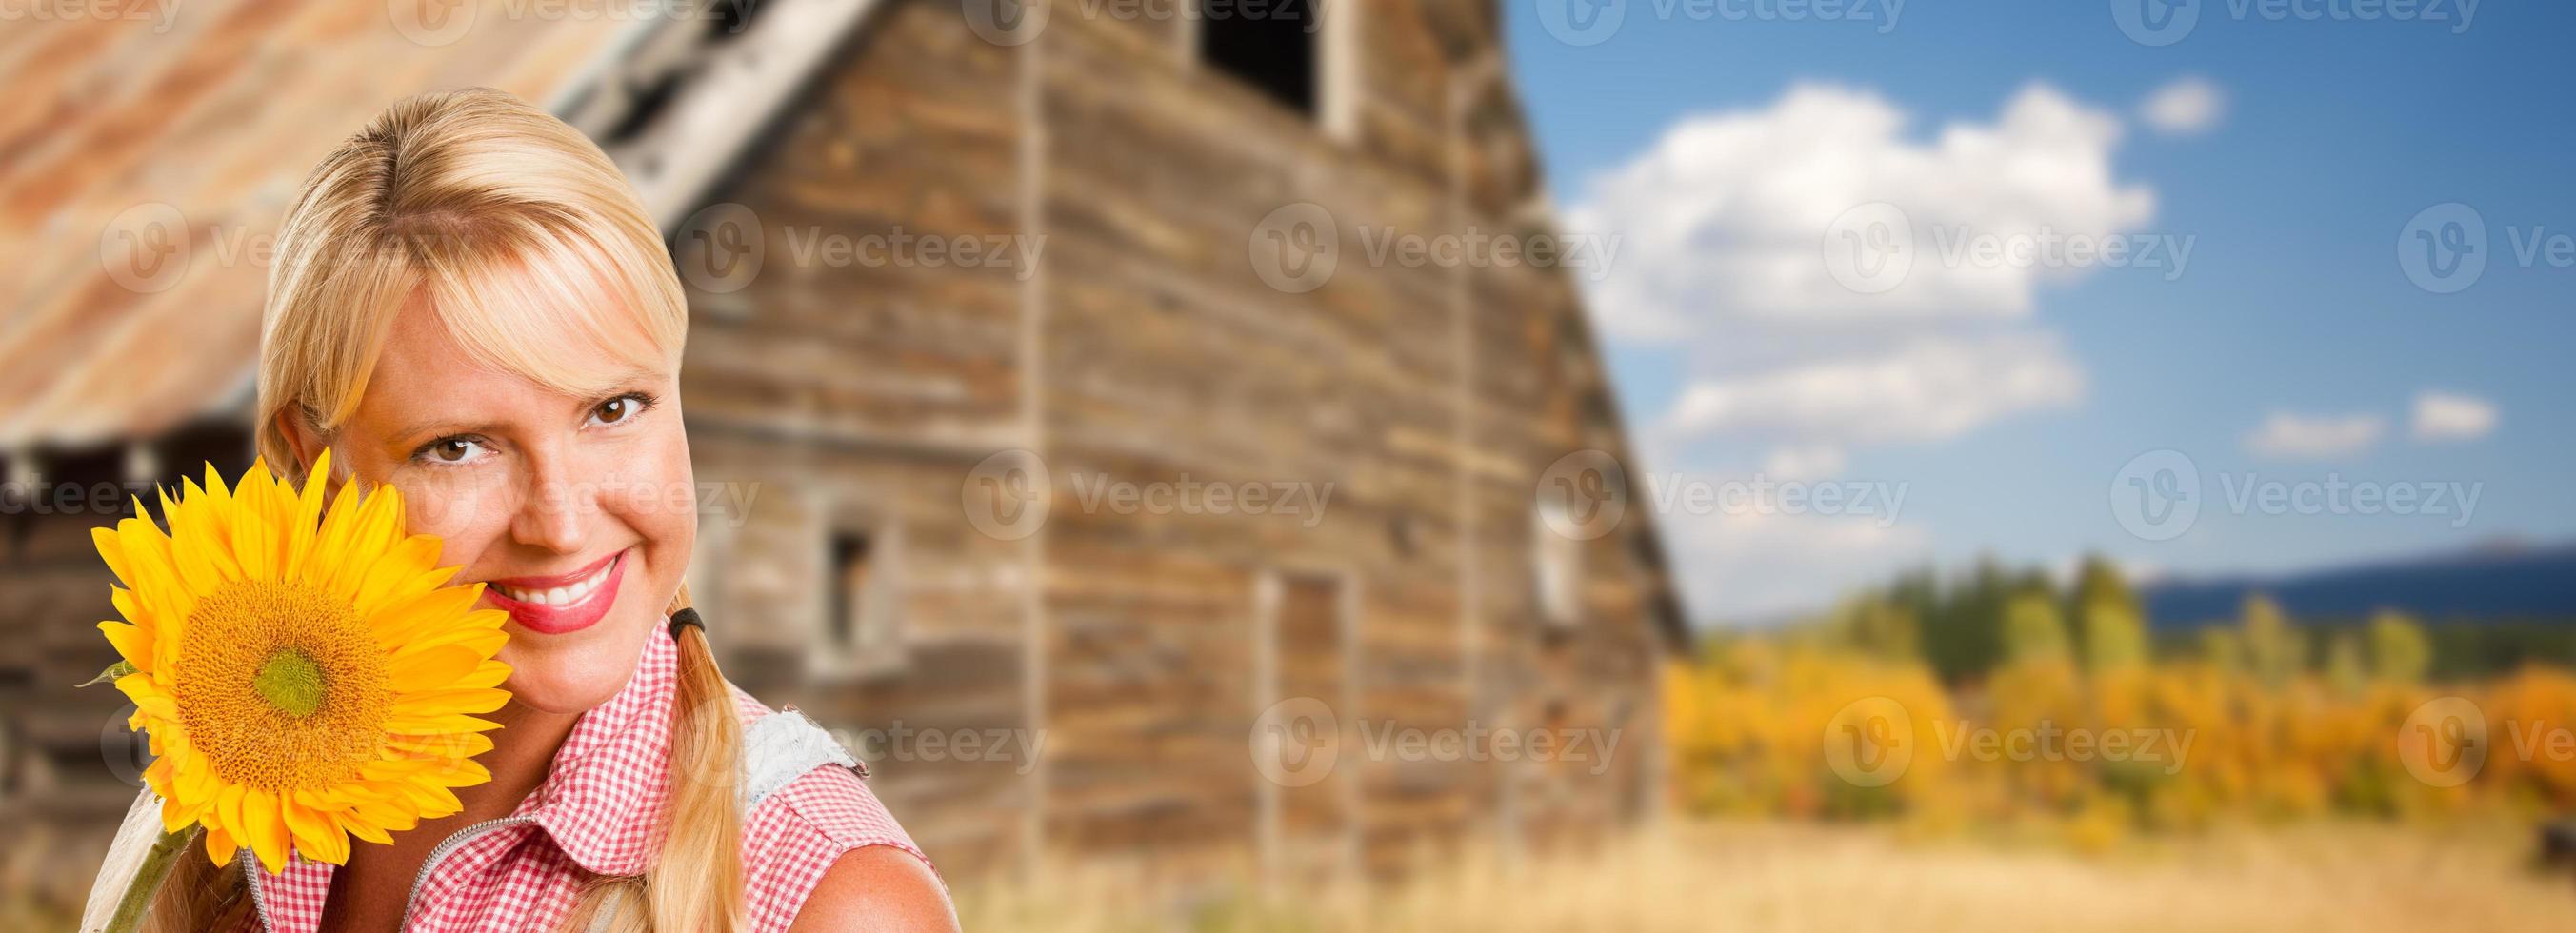 skön caucasian ung kvinna innehav solros i främre av rustik ladugård i de Land. foto